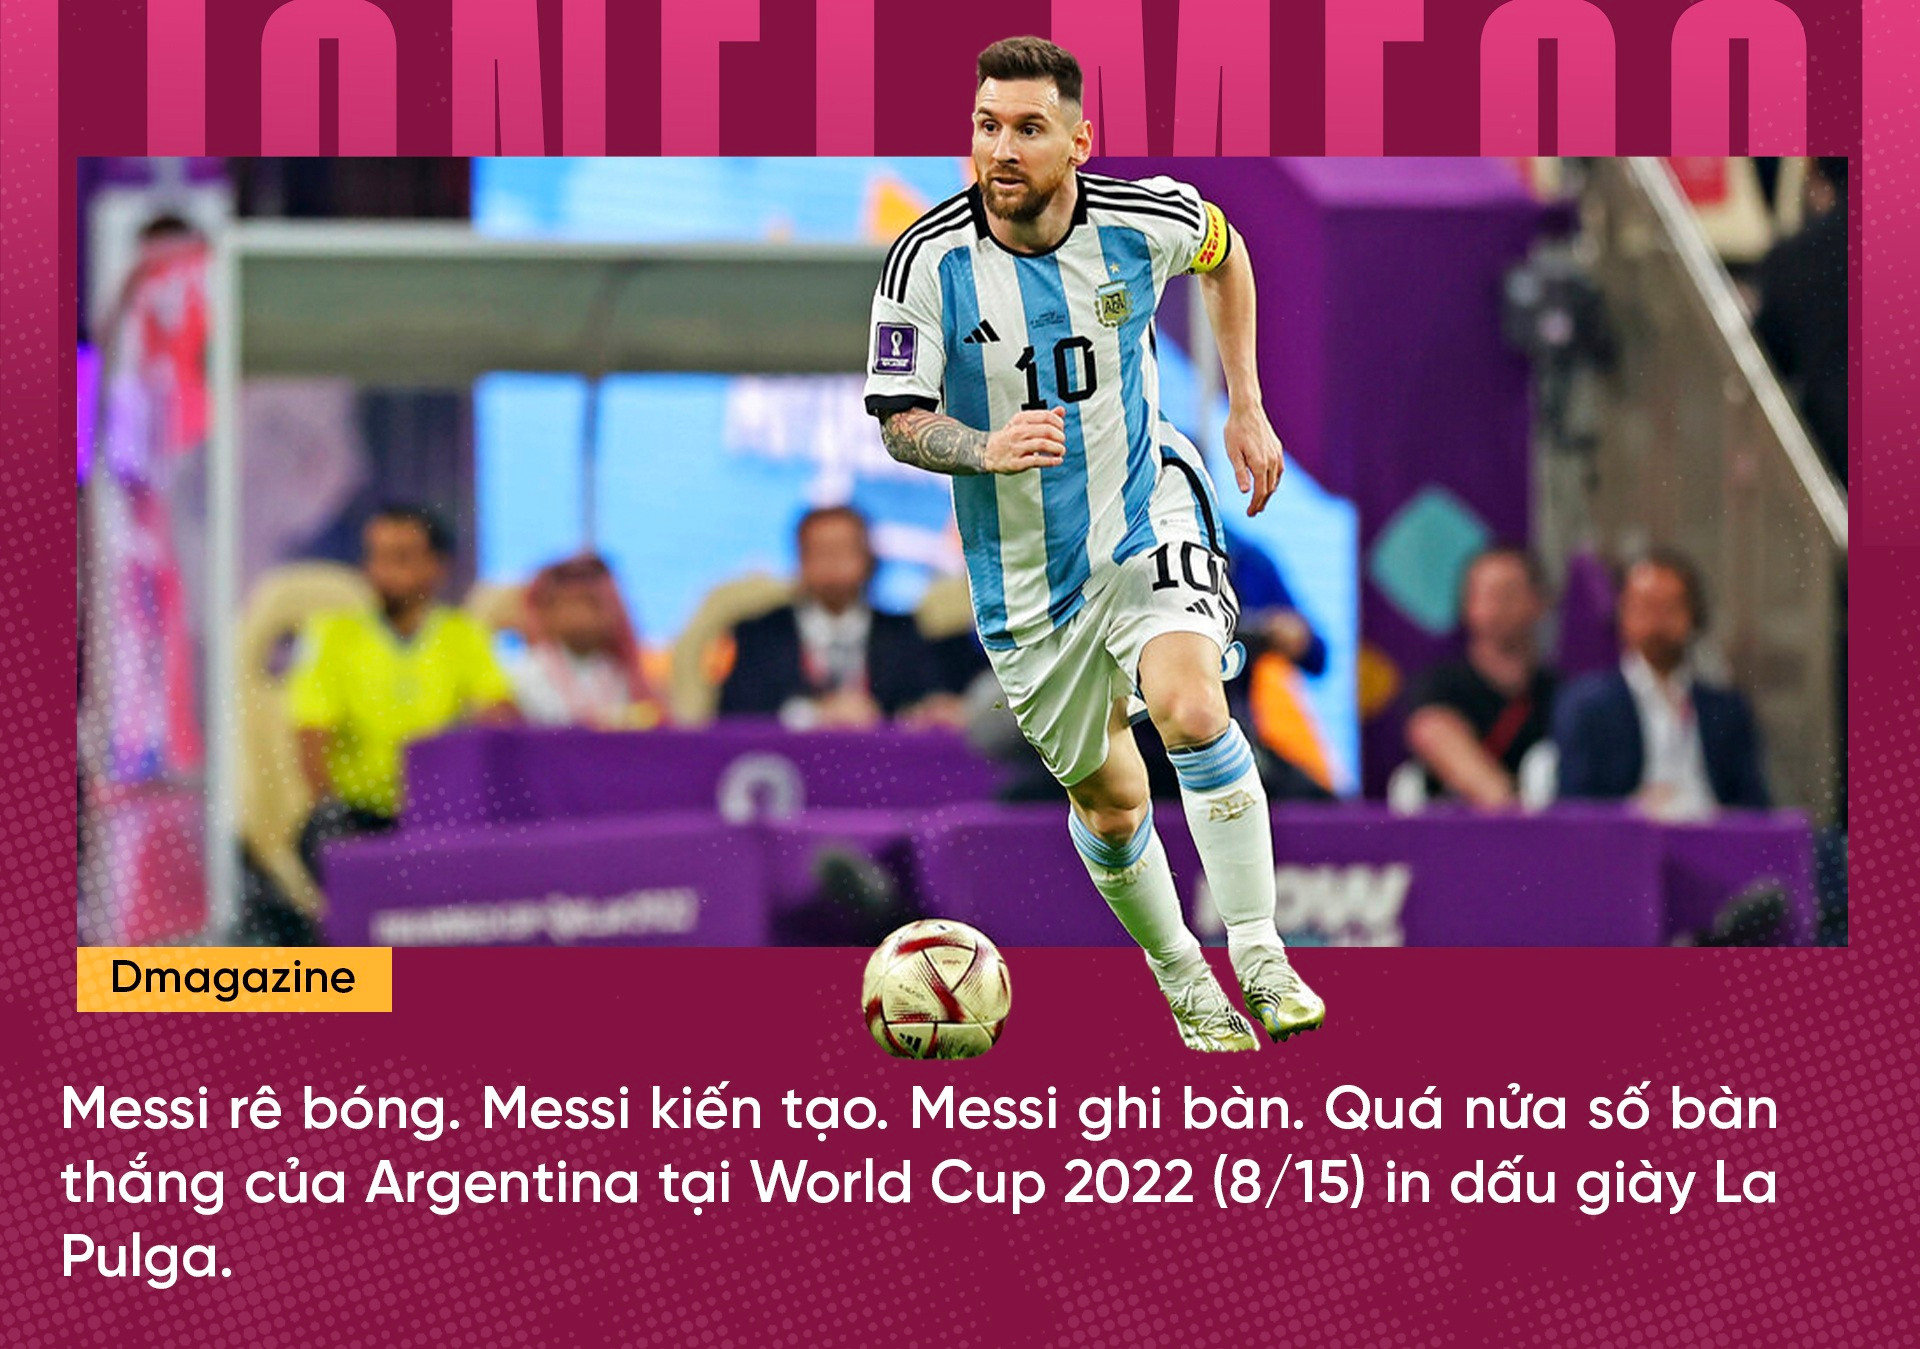 Chung kết World Cup 2022 Argentina - Pháp: Giấc mộng bá vương - 15